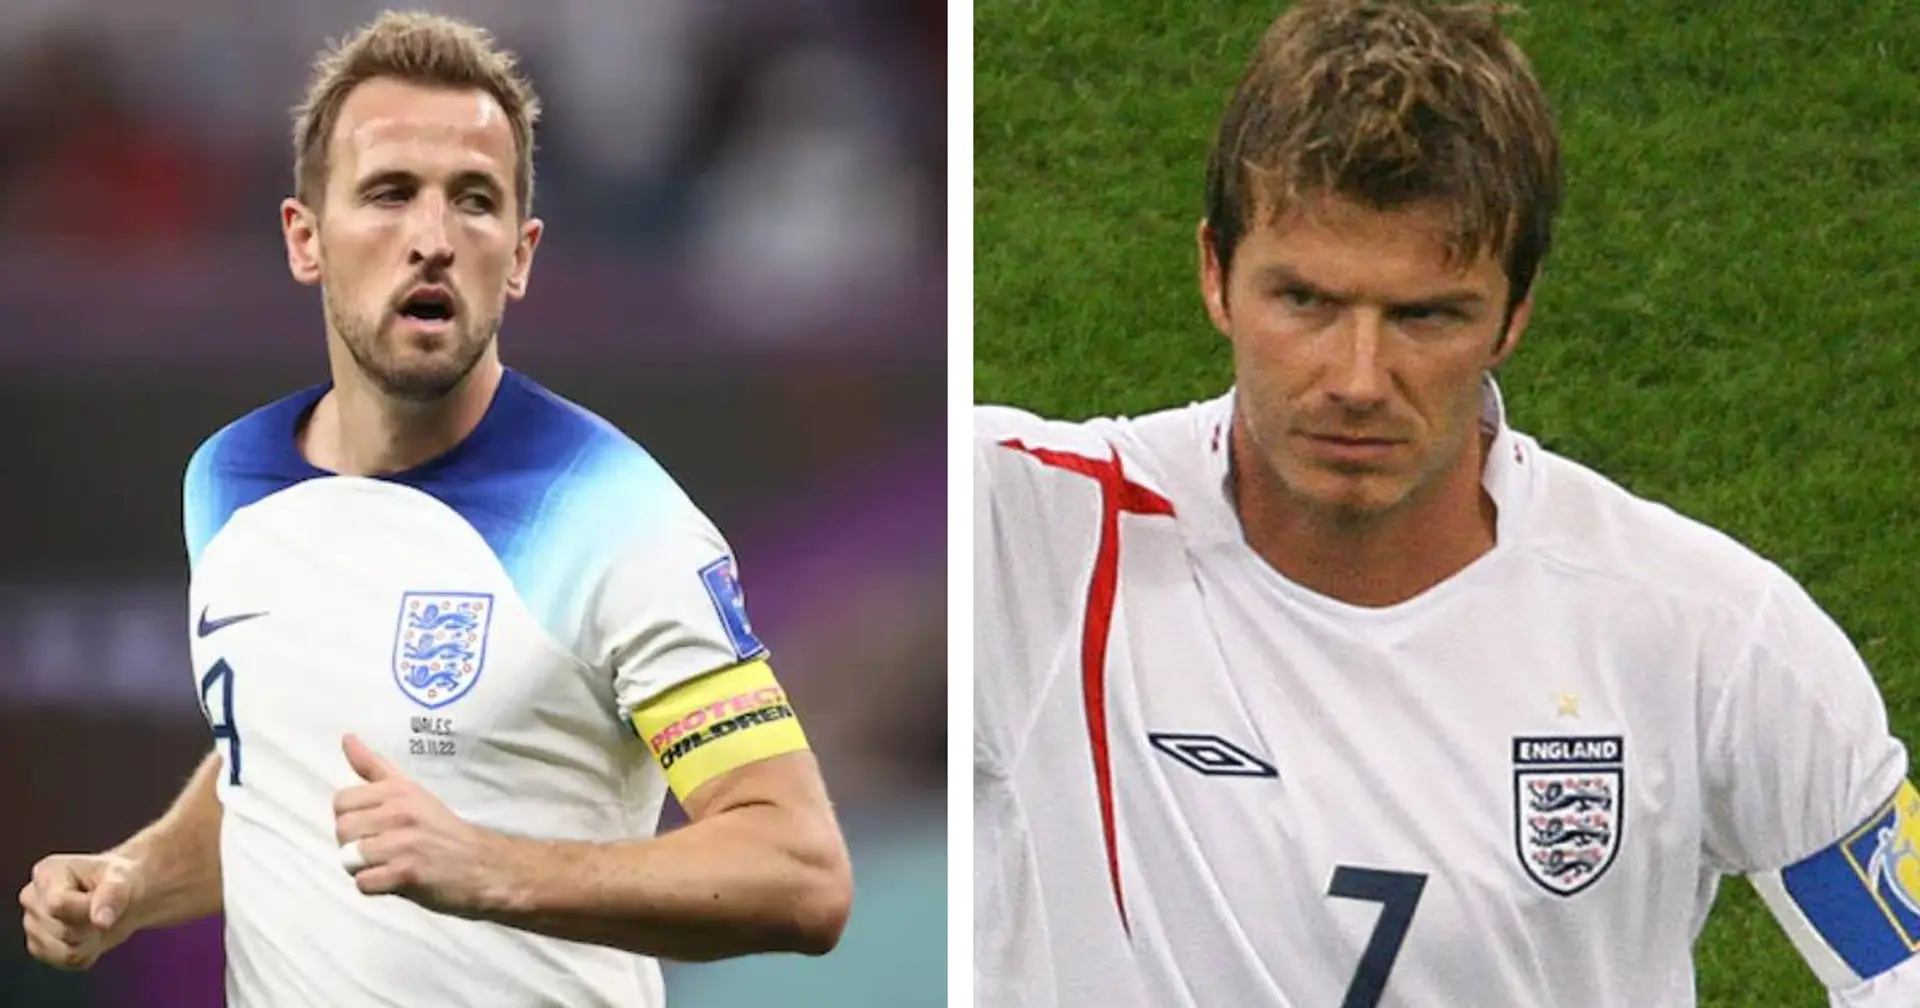 "Ich wollte sein wie er": Kane outet sich als großer Fan des England-Stars Beckham